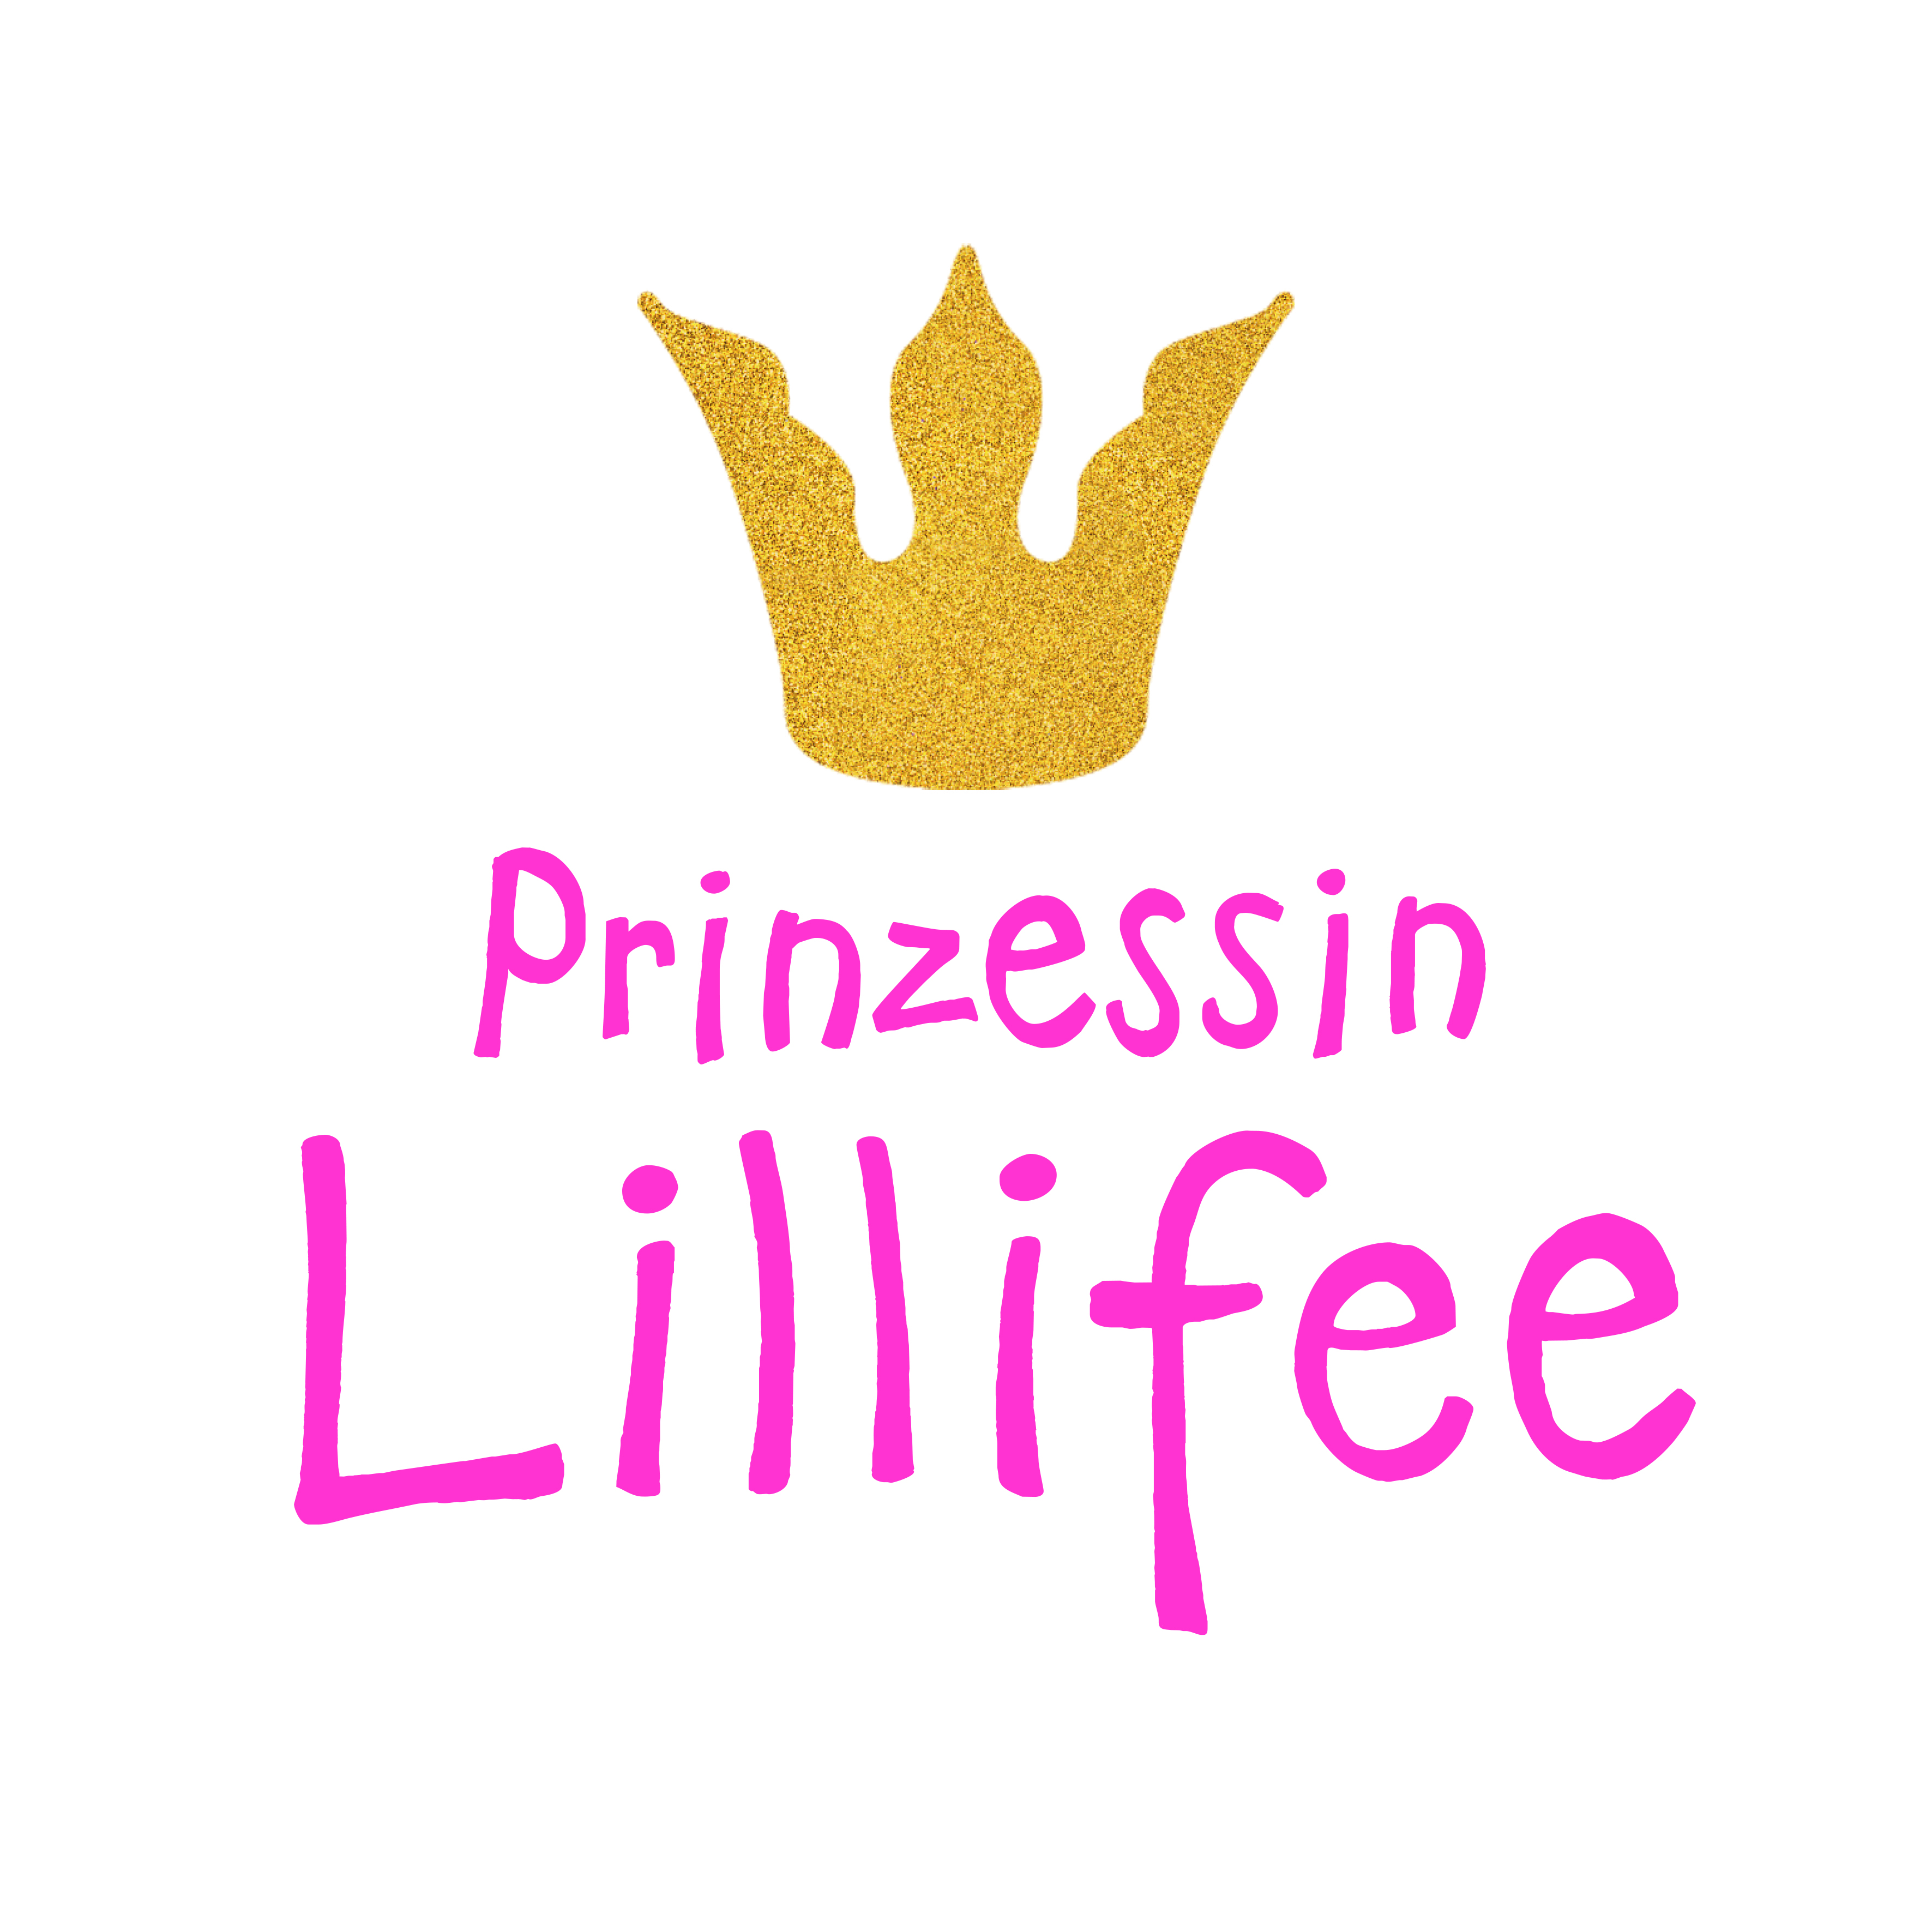 Puppen-Accessoires-Set "Prinzessin Lillifee", 3-teilig : Ballerinas, Glitzerkrone und Zauberstab, Gr. 30-34 cm